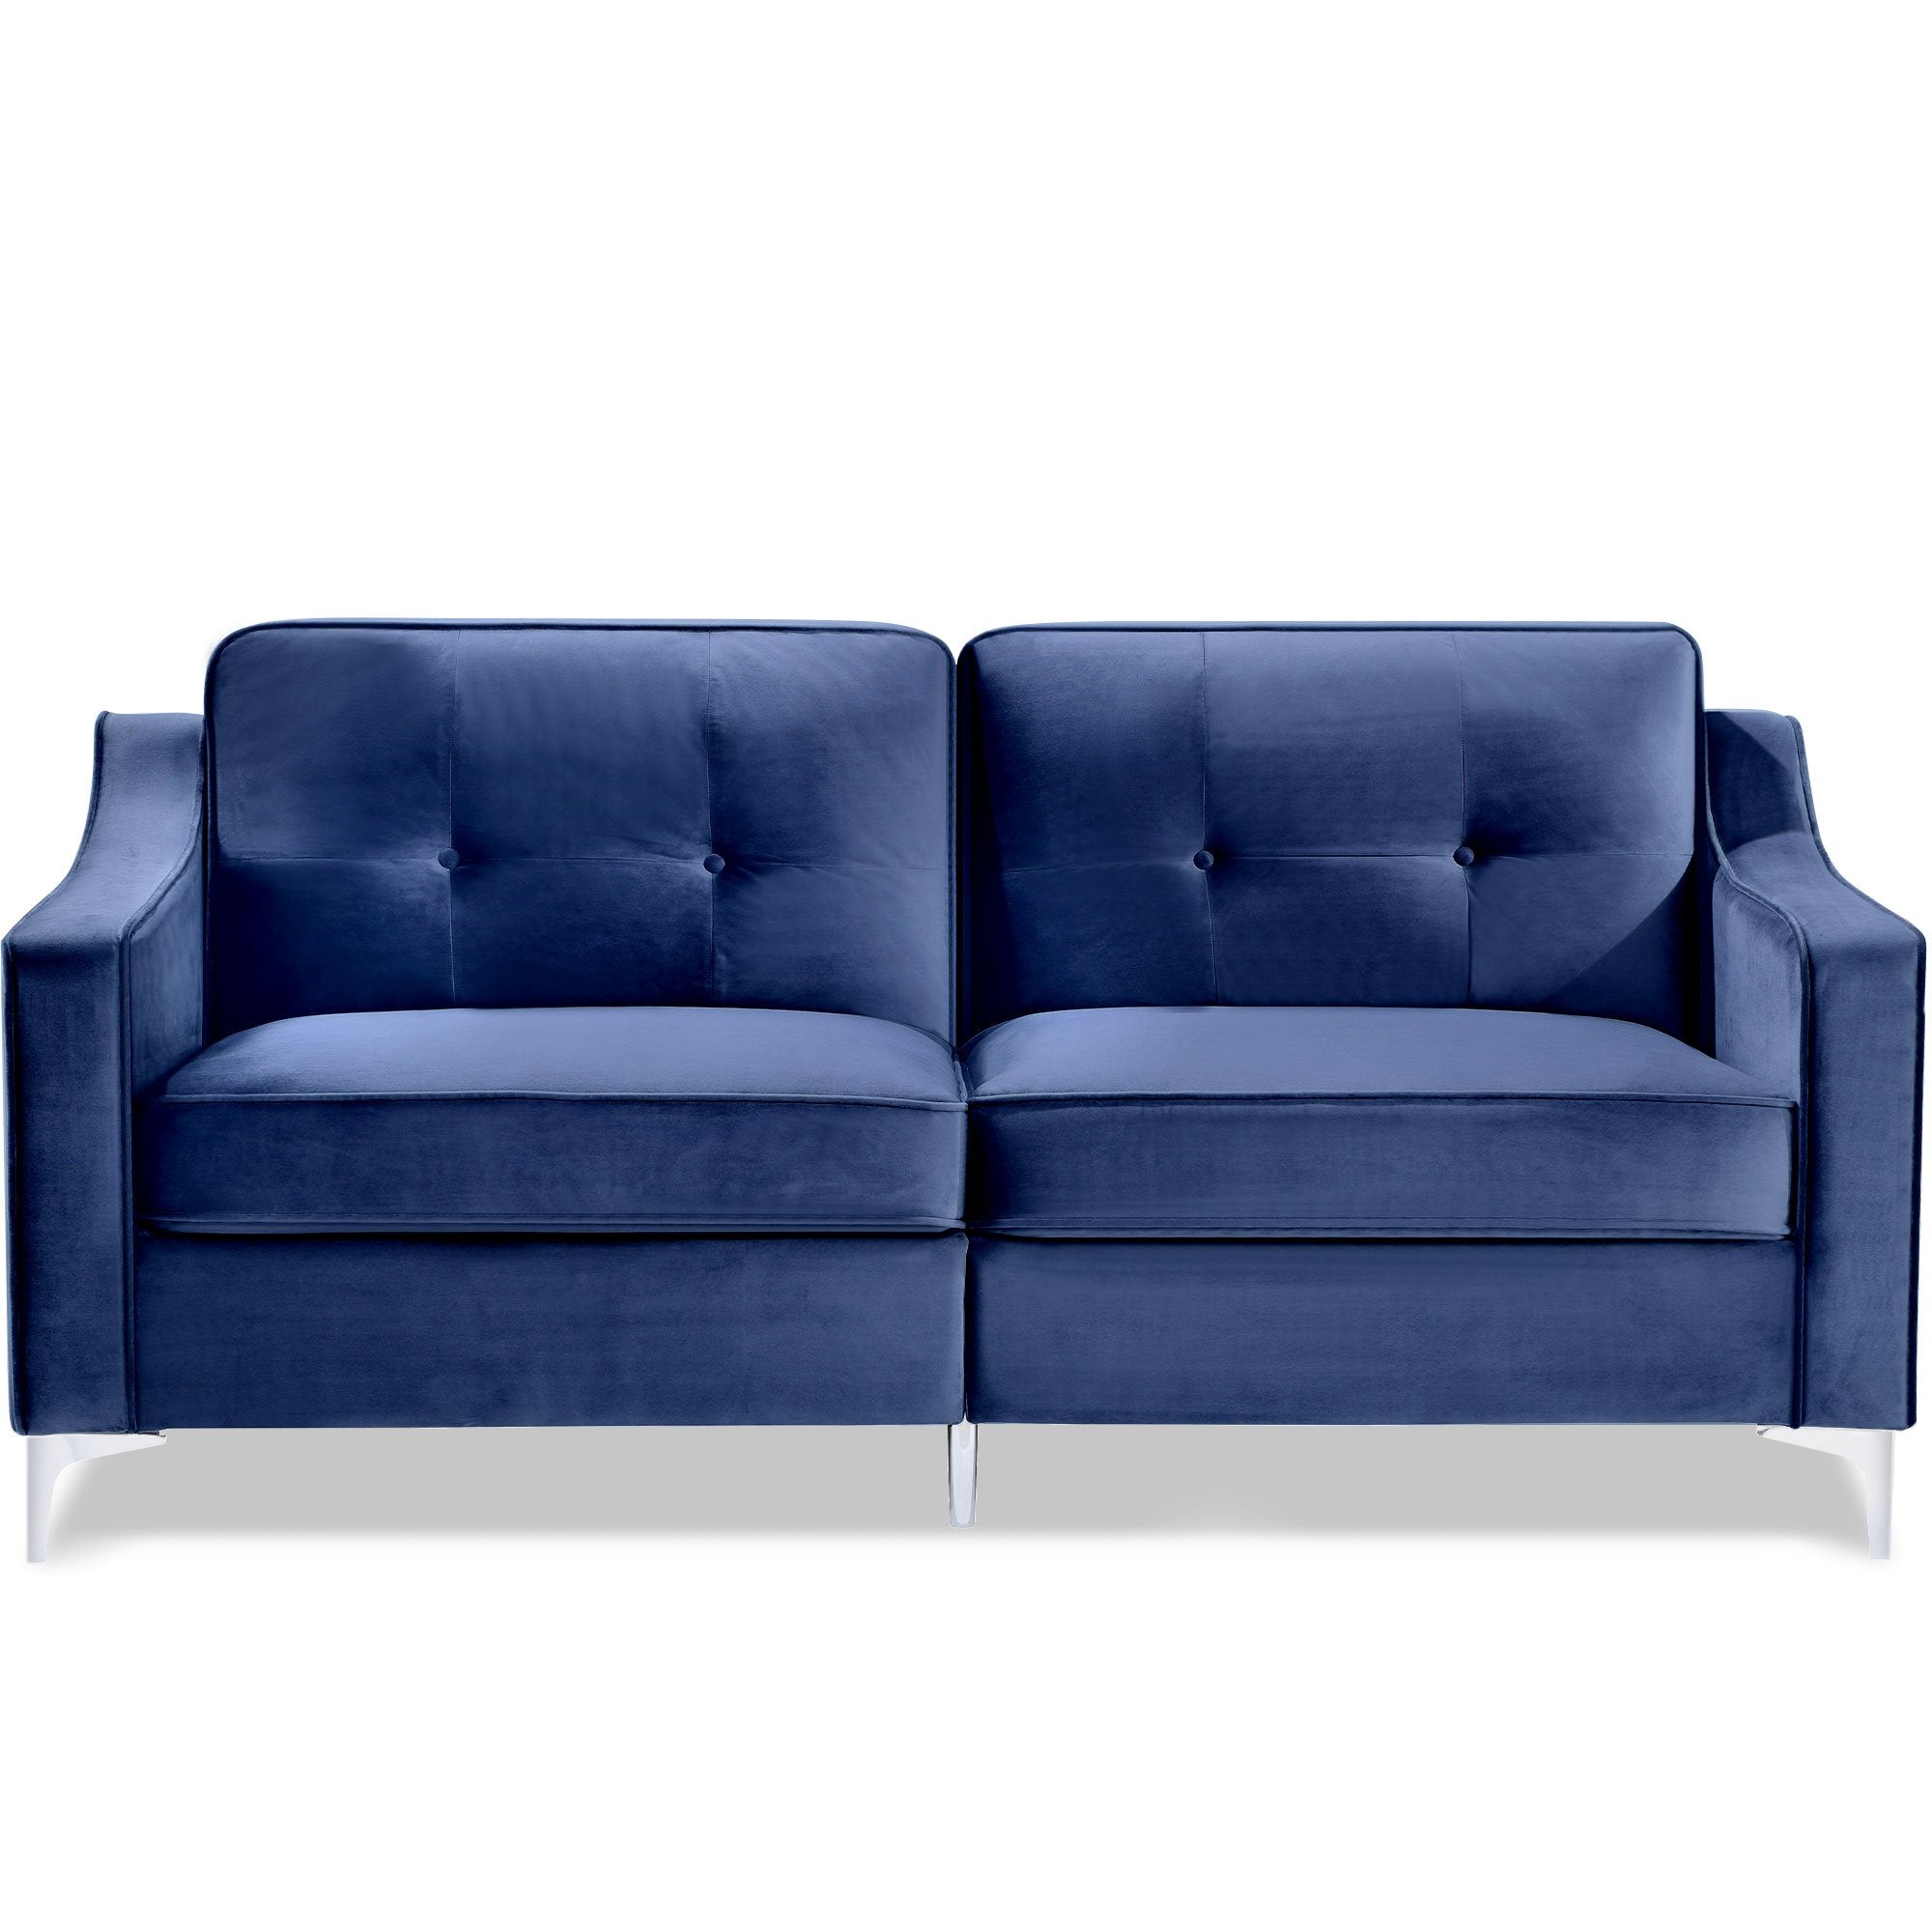 72" Tufted Velvet Upholstered Sofa Couch, Mid-century Modern Sofa Set with Chromed Metal Legs-Boyel Living